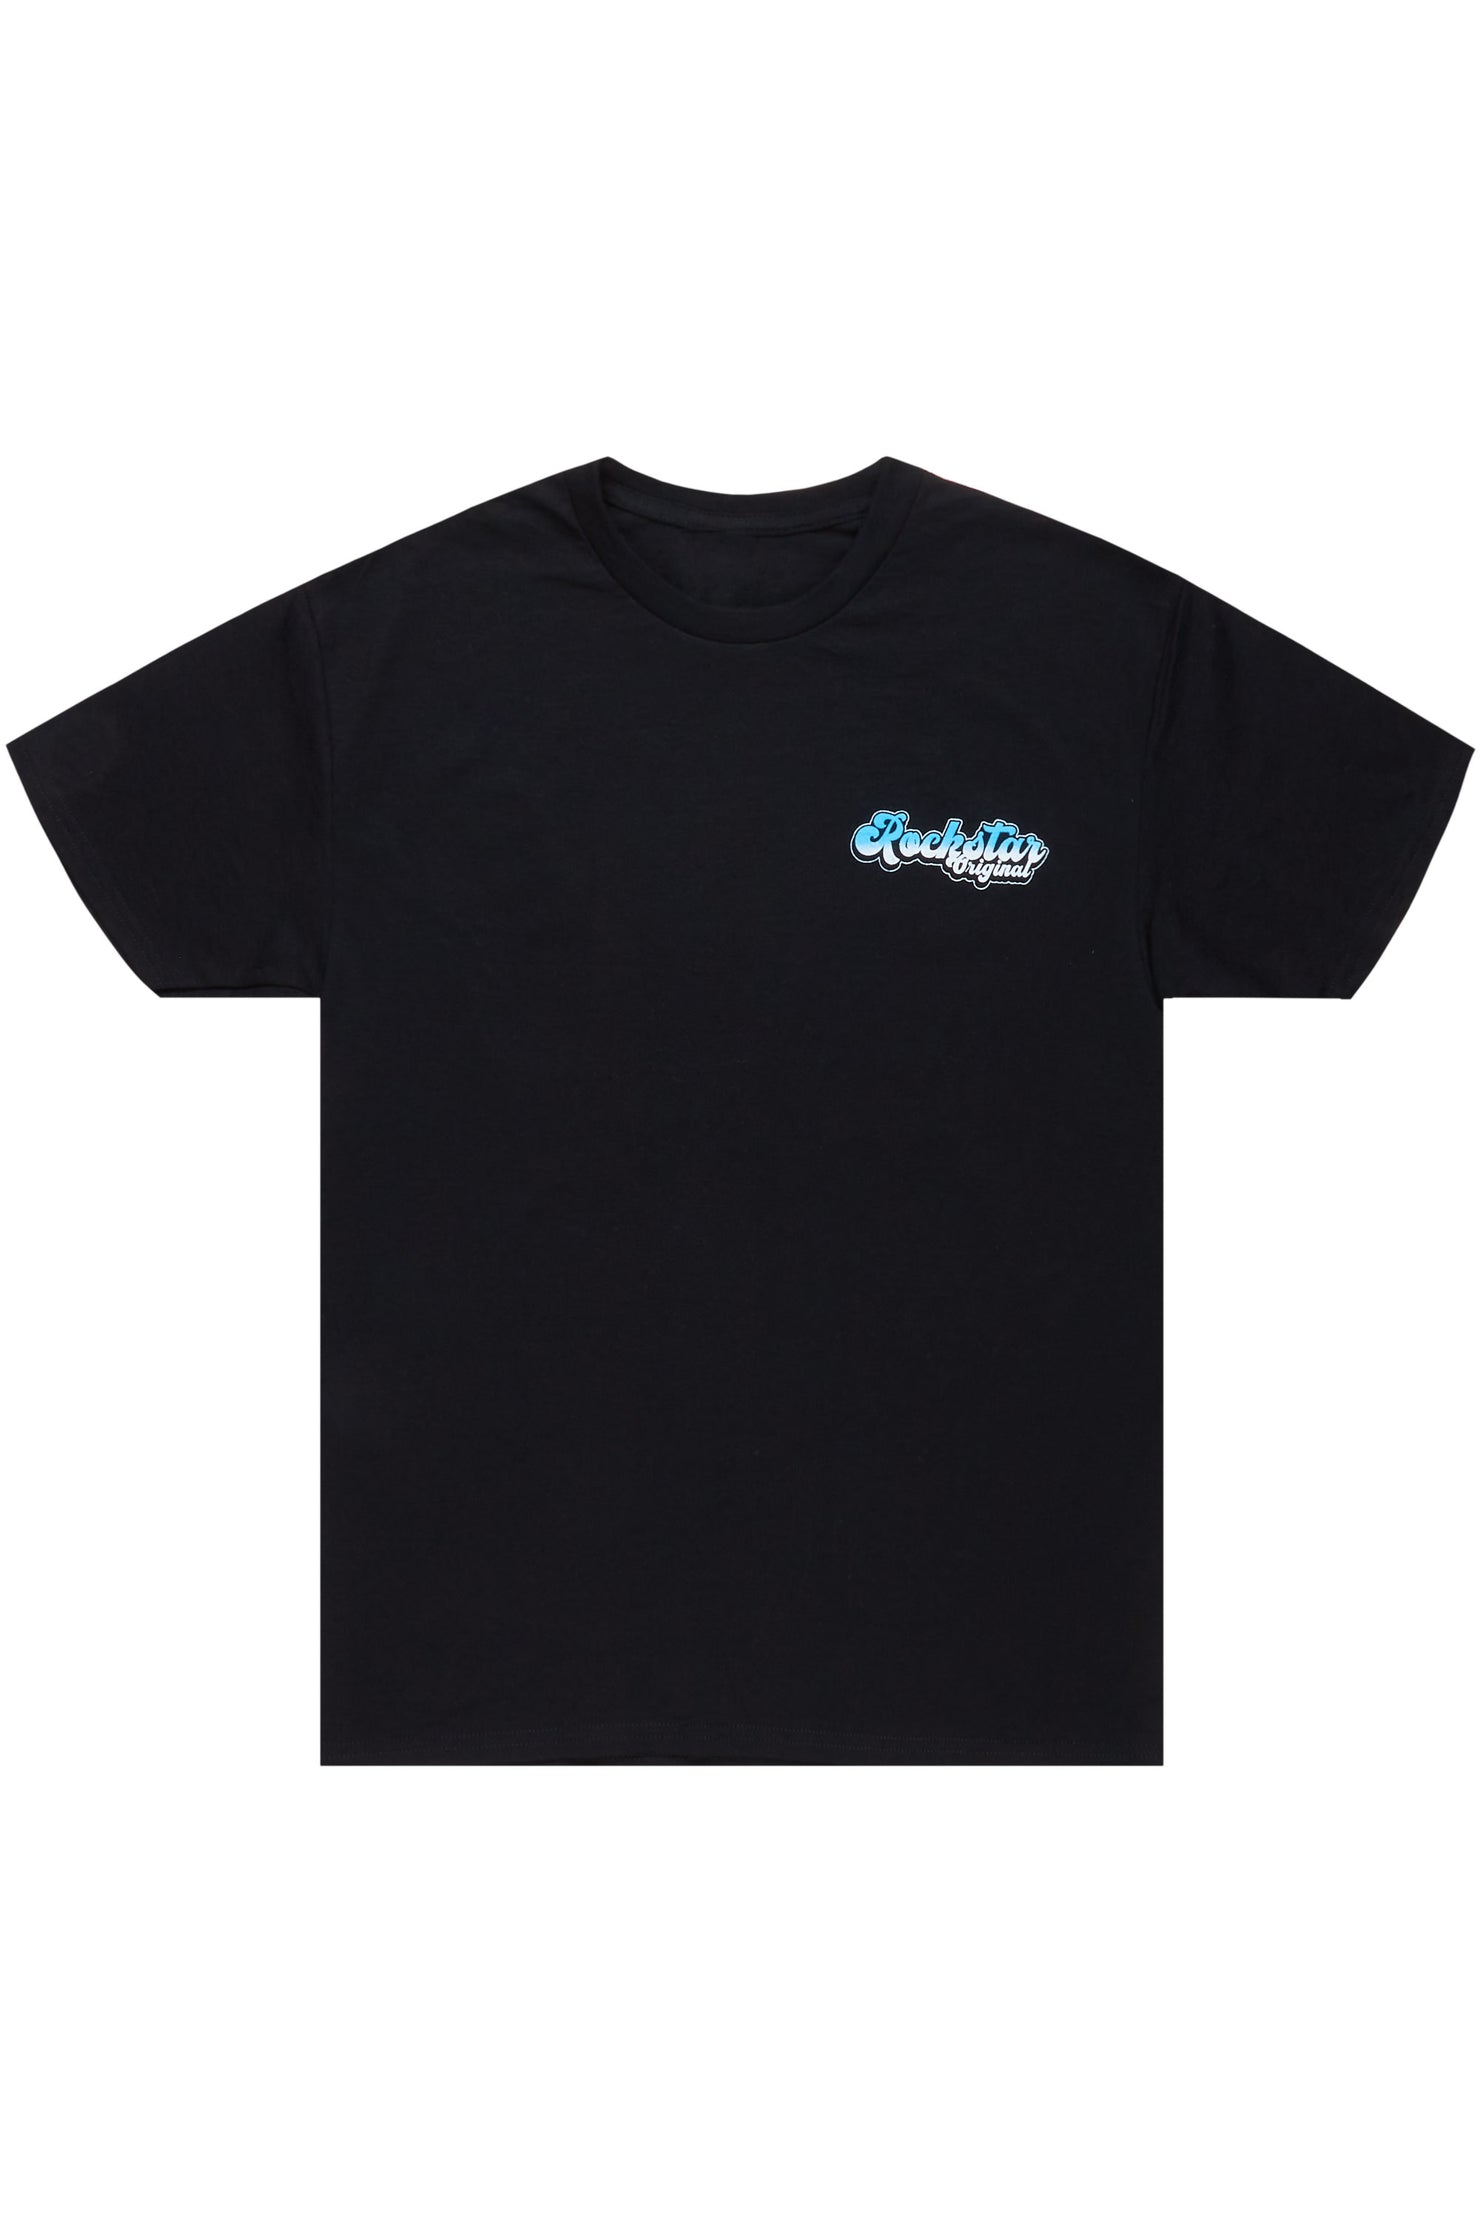 Neo Black Graphic T-Shirt